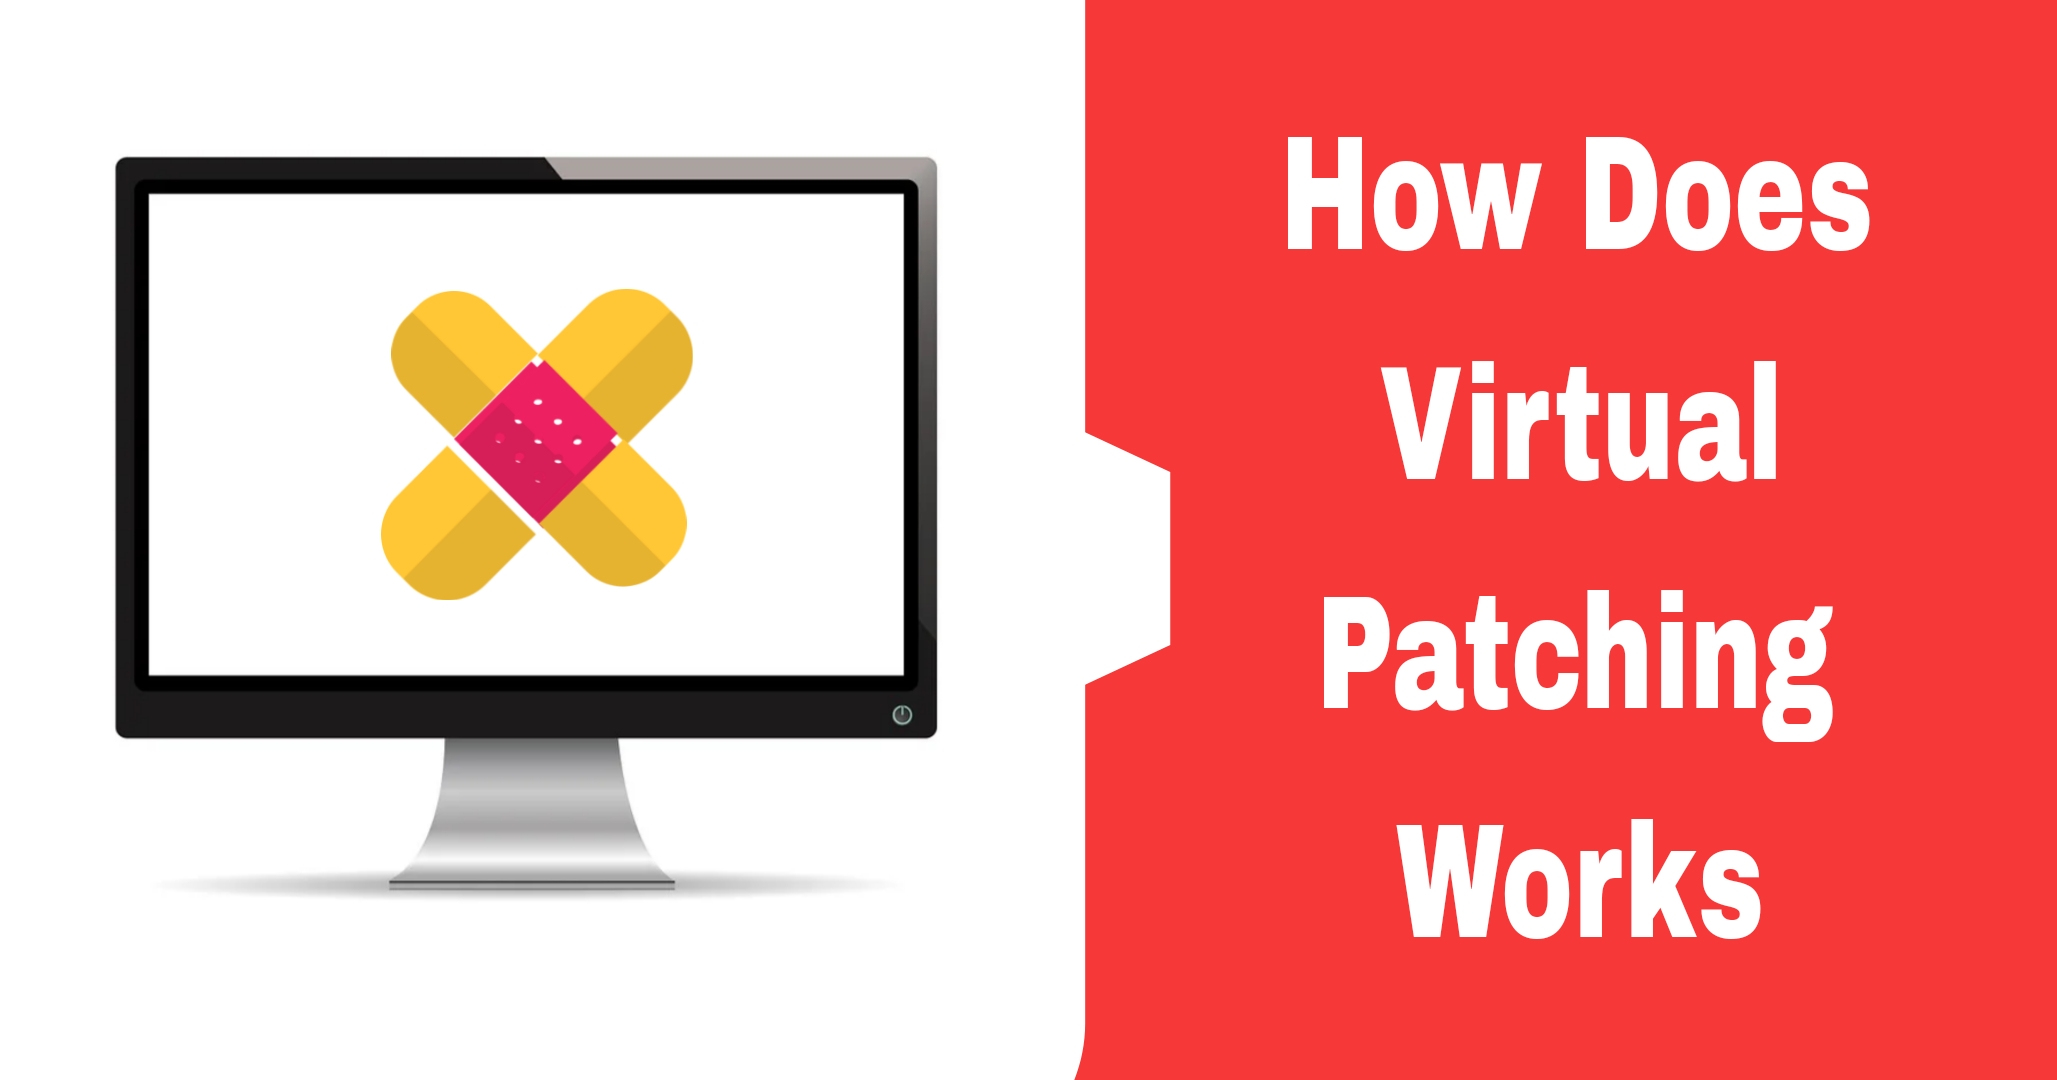 Virtual patching